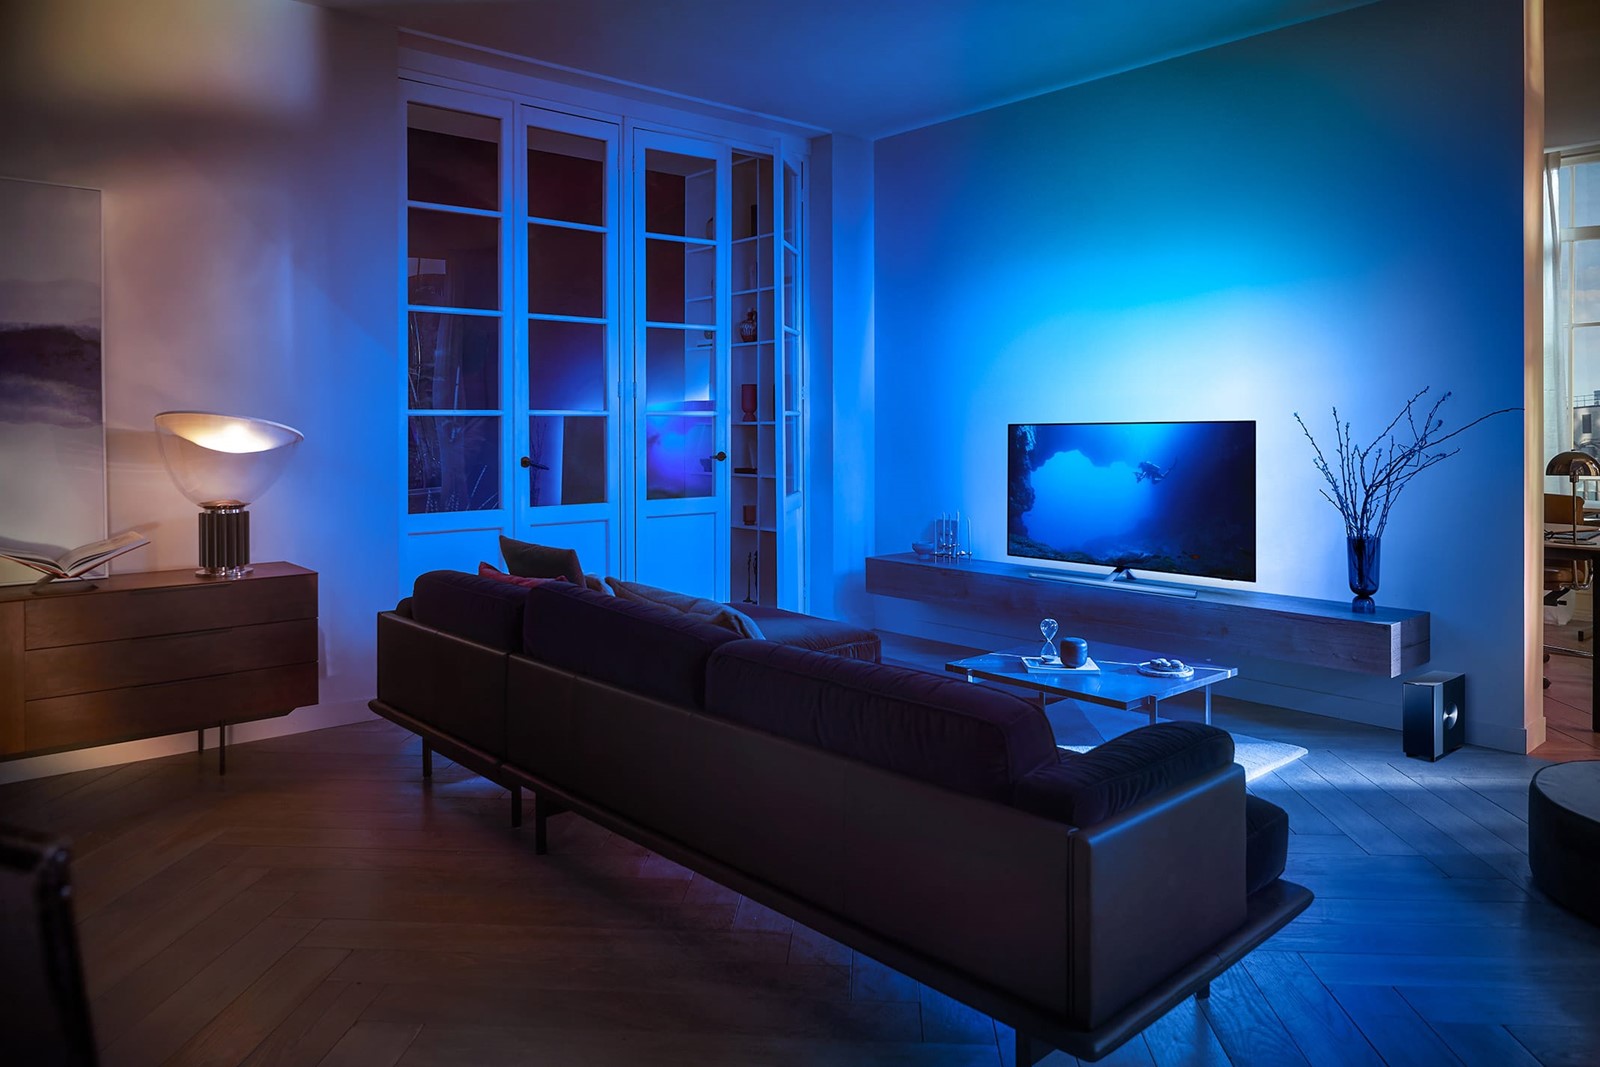 Philipsova linija televizora OLED807 donosi OLED EX panele, Android TV i  atraktivno osvjetljenje - Televizori @ Bug.hr